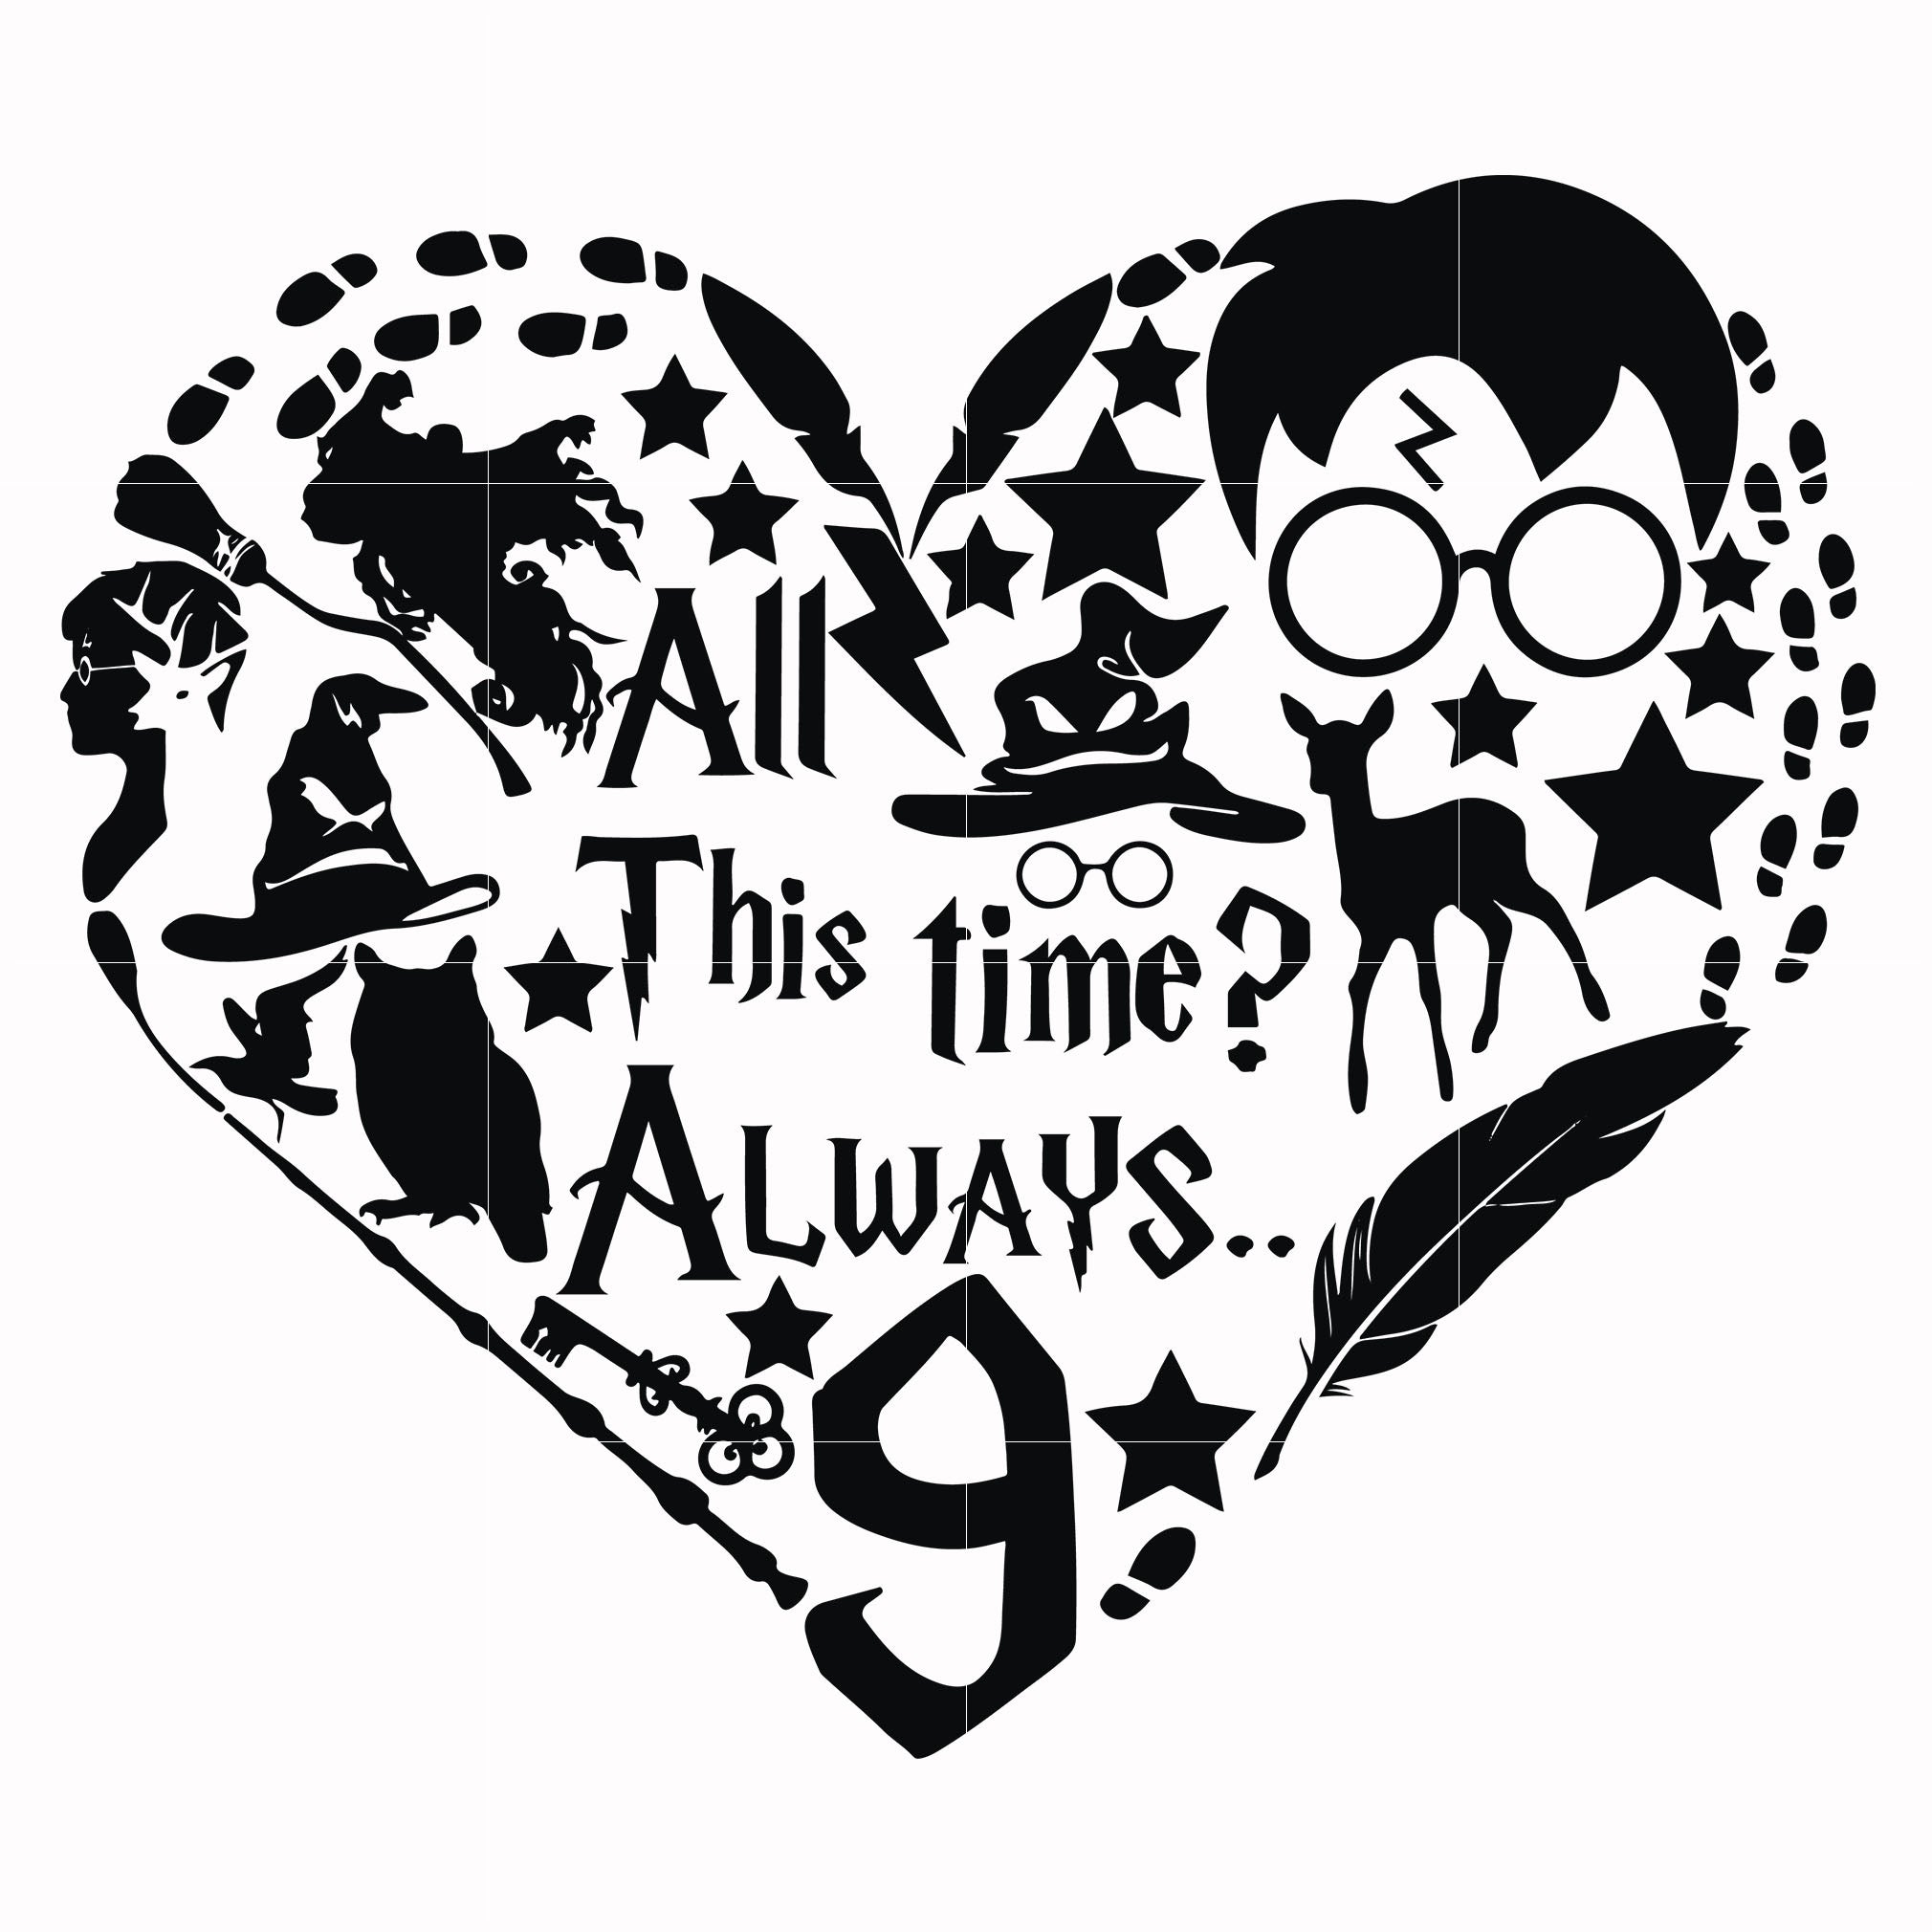 Download 36+ Free Harry Potter Svg Images Background Free SVG files ...